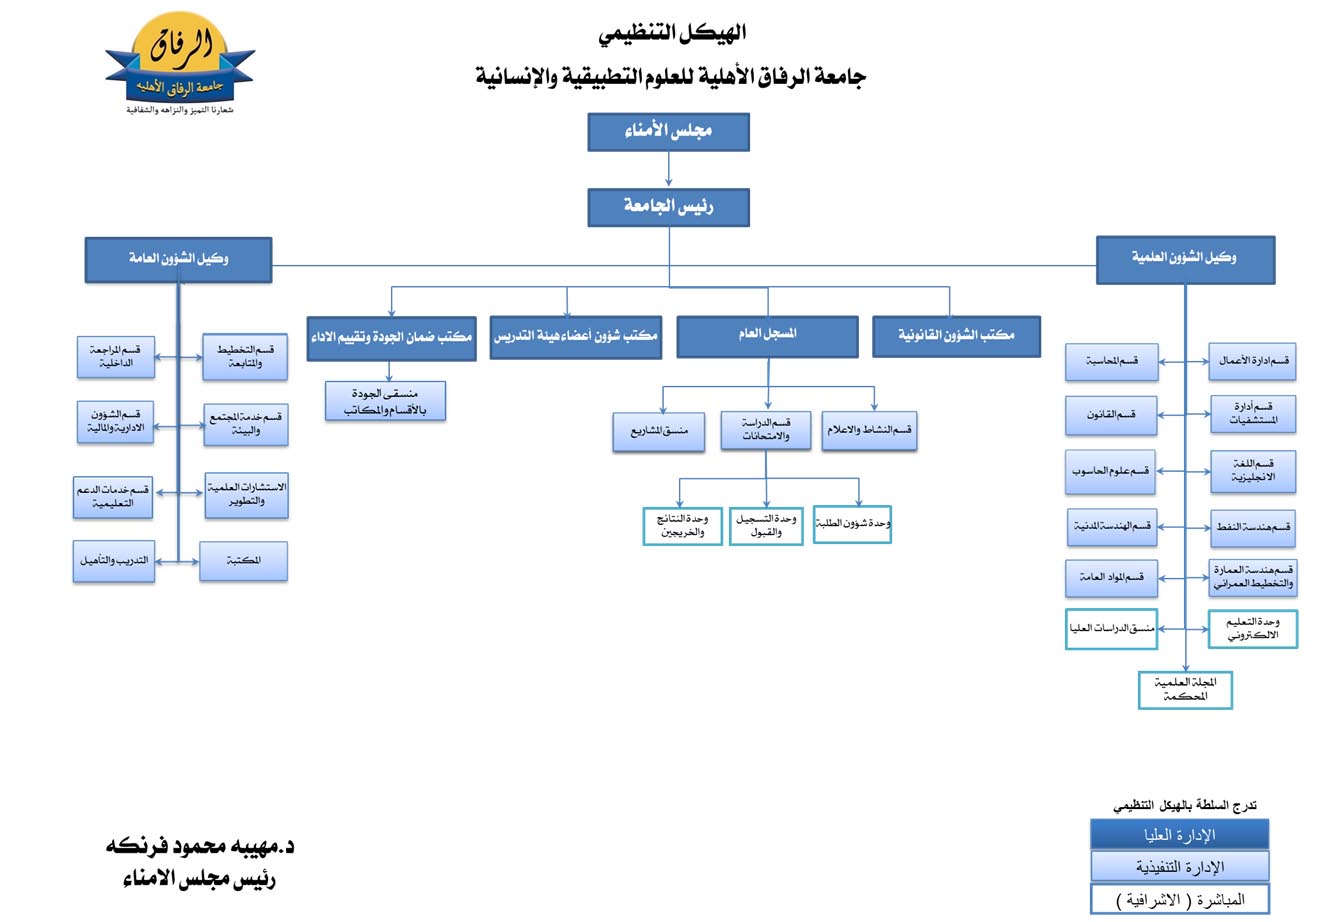 الهيكل التنظيمي لجامعة الرفاق الاهلية